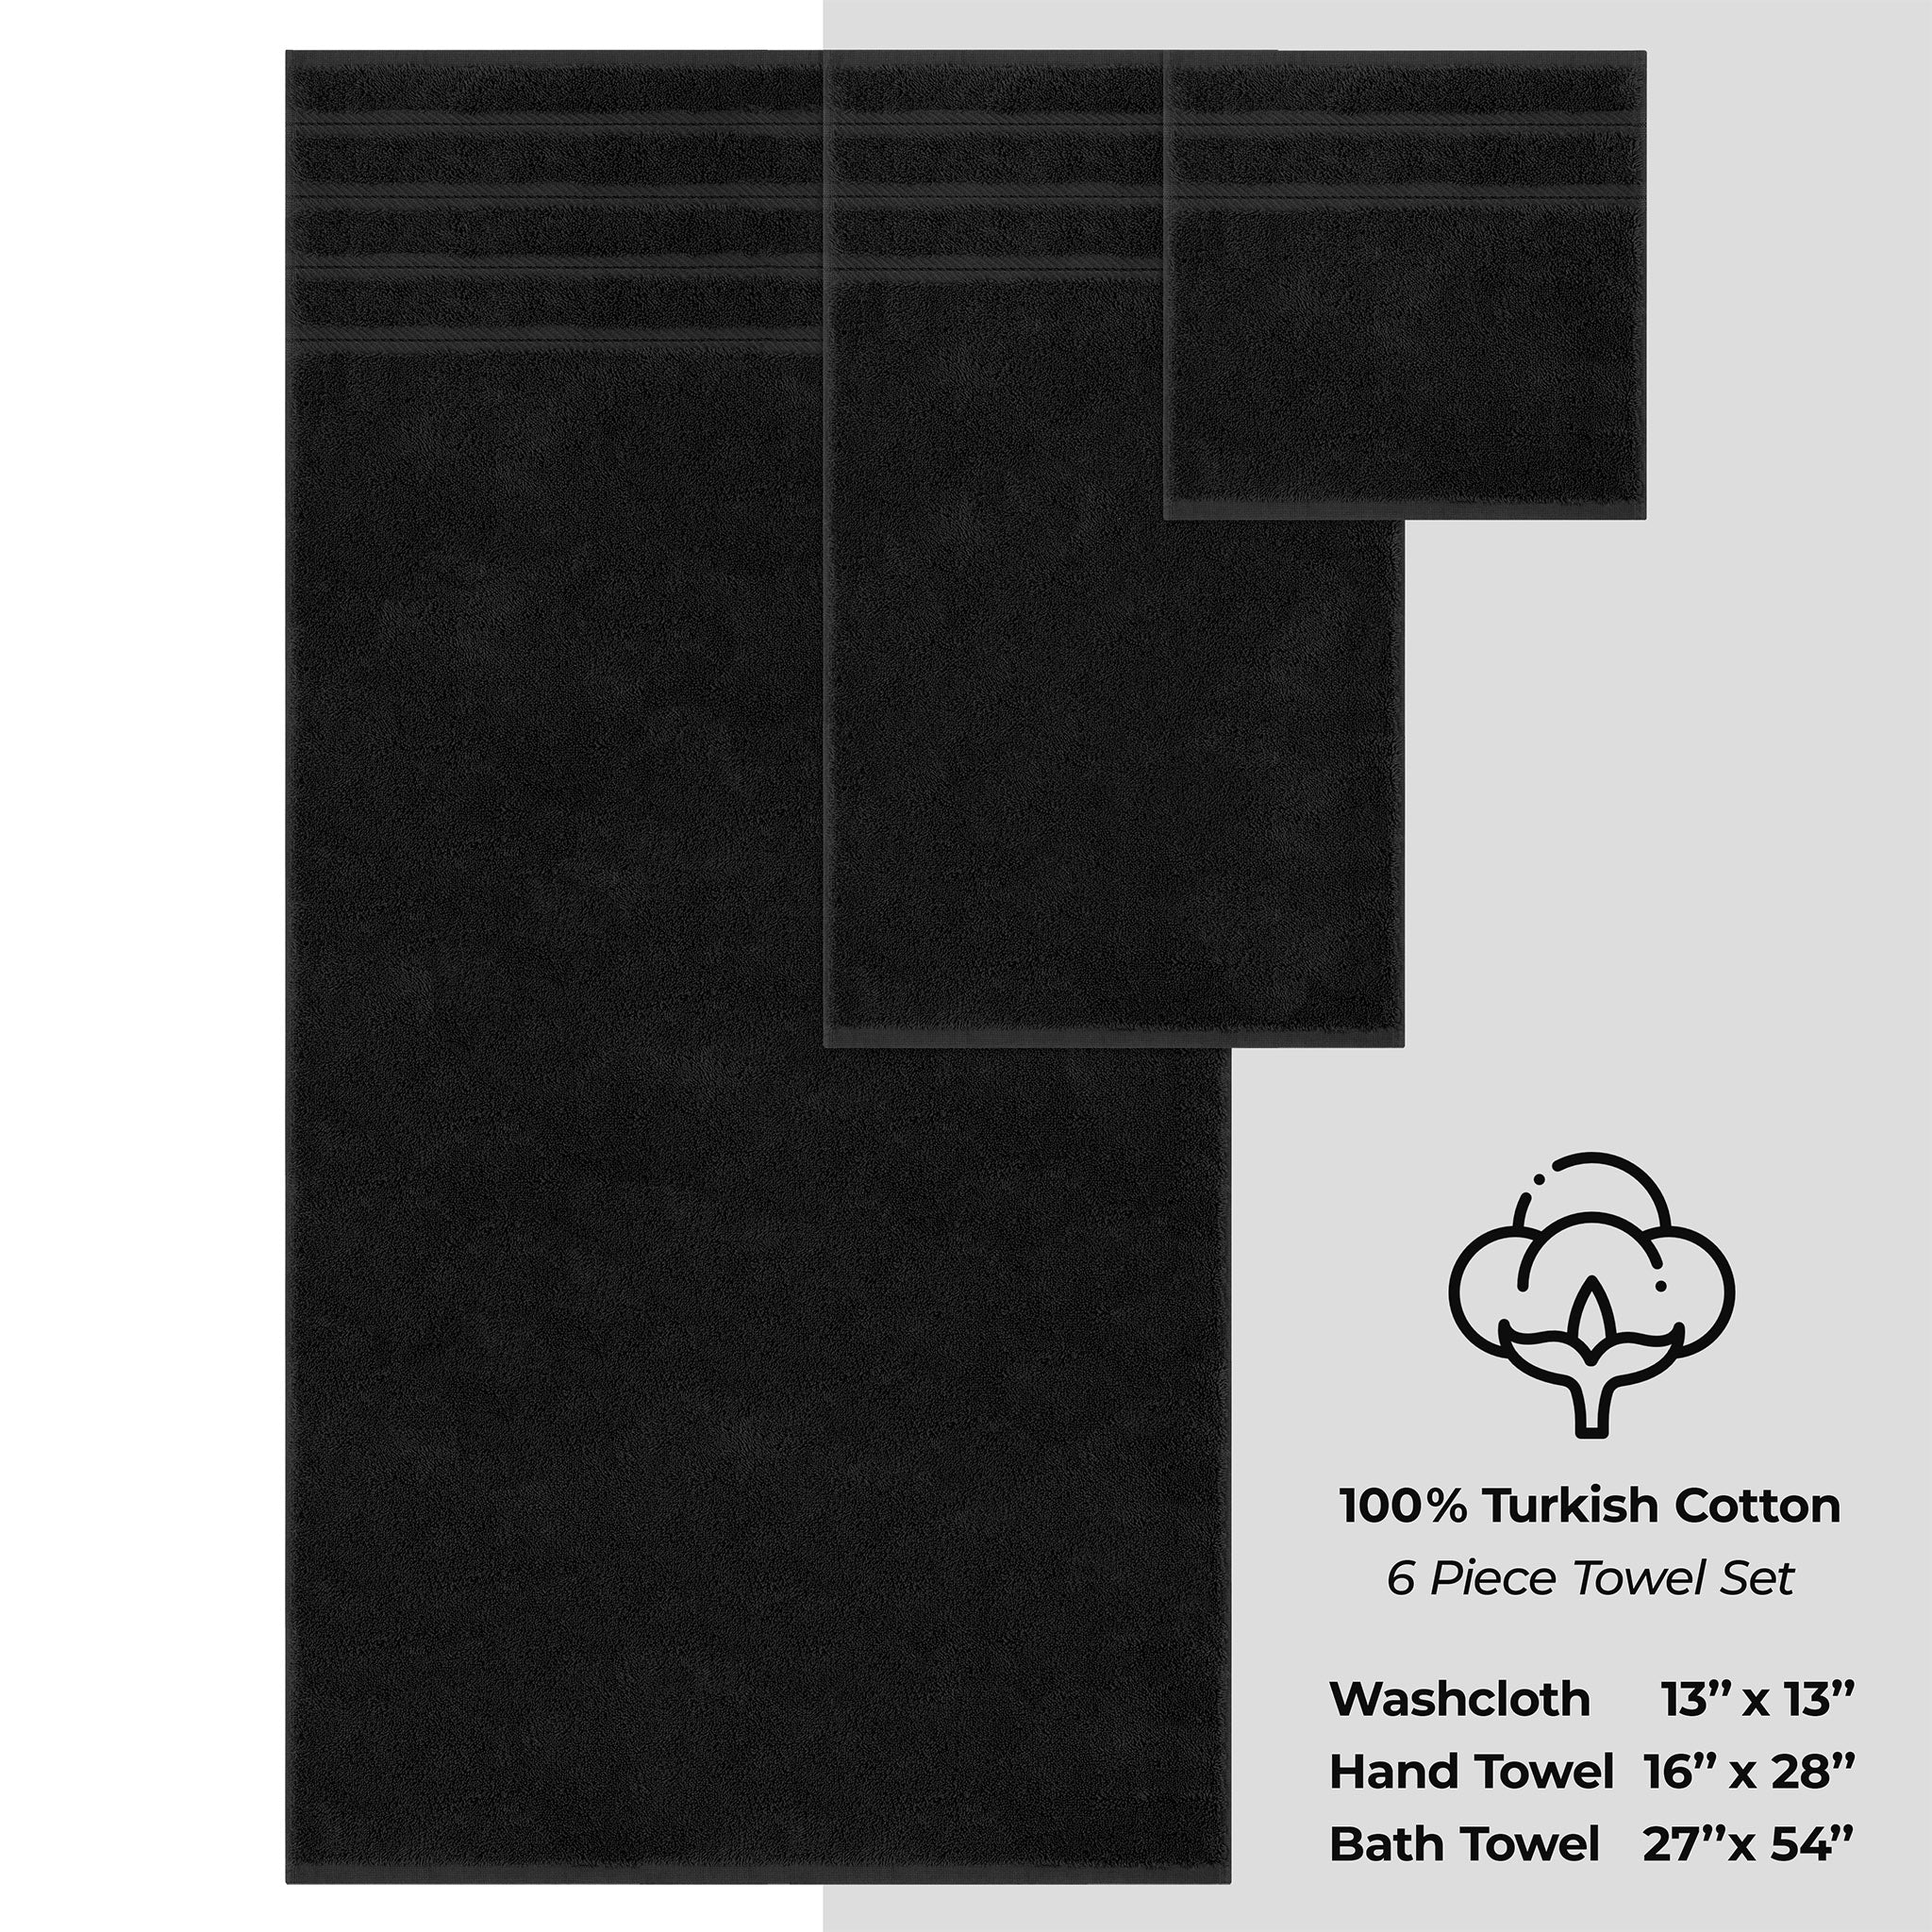 American Soft Linen 100% Turkish Cotton 6 Piece Towel Set Wholesale black-4